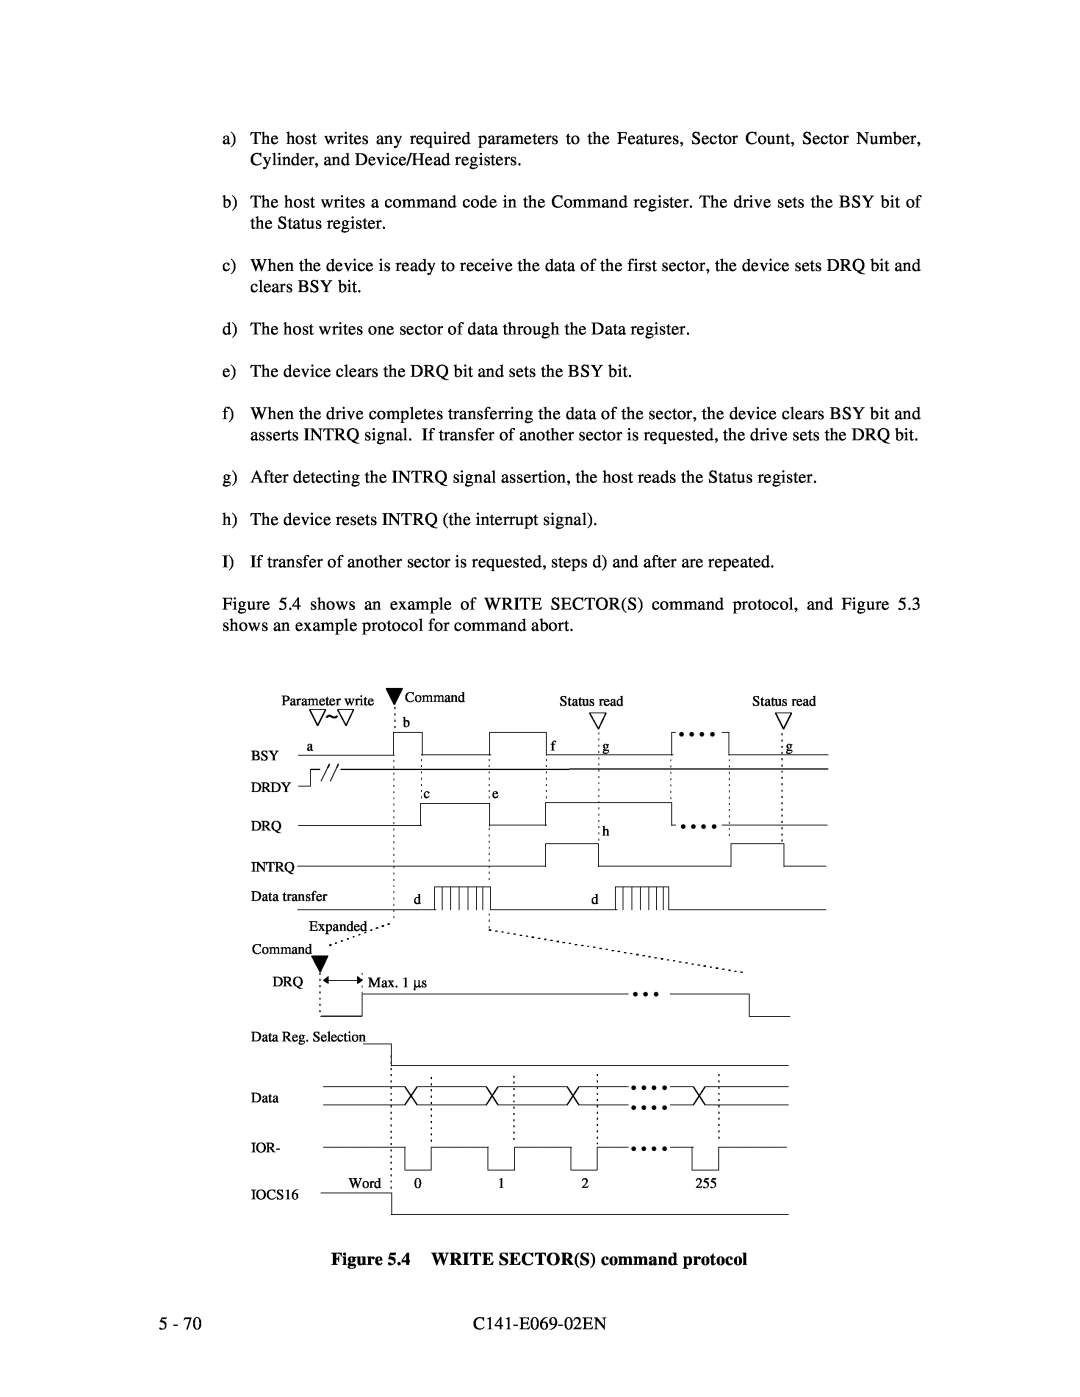 Fujitsu MPD3XXXAT manual 4 WRITE SECTORS command protocol 